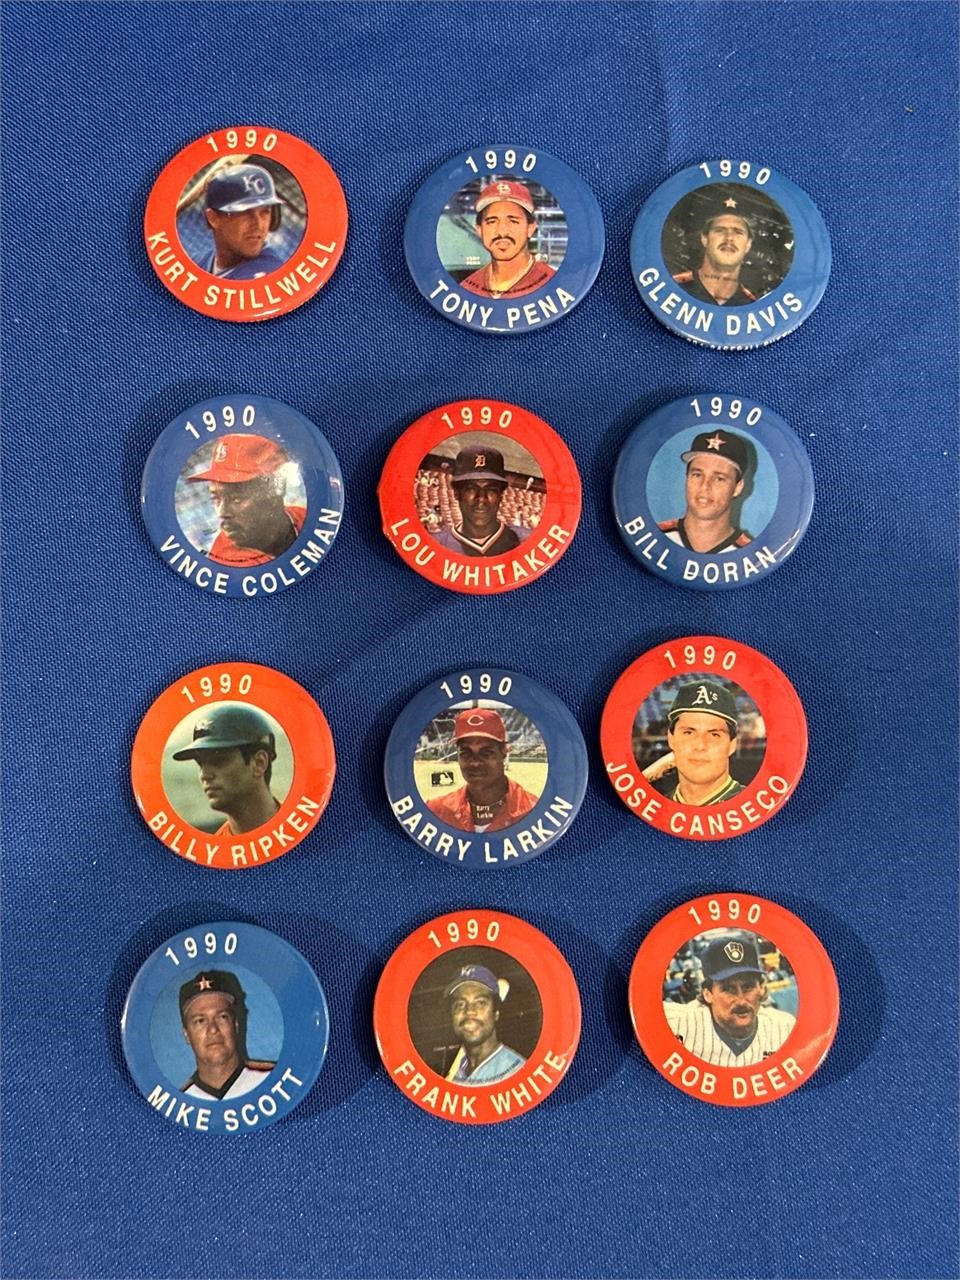 1990 Baseball pins/buttons